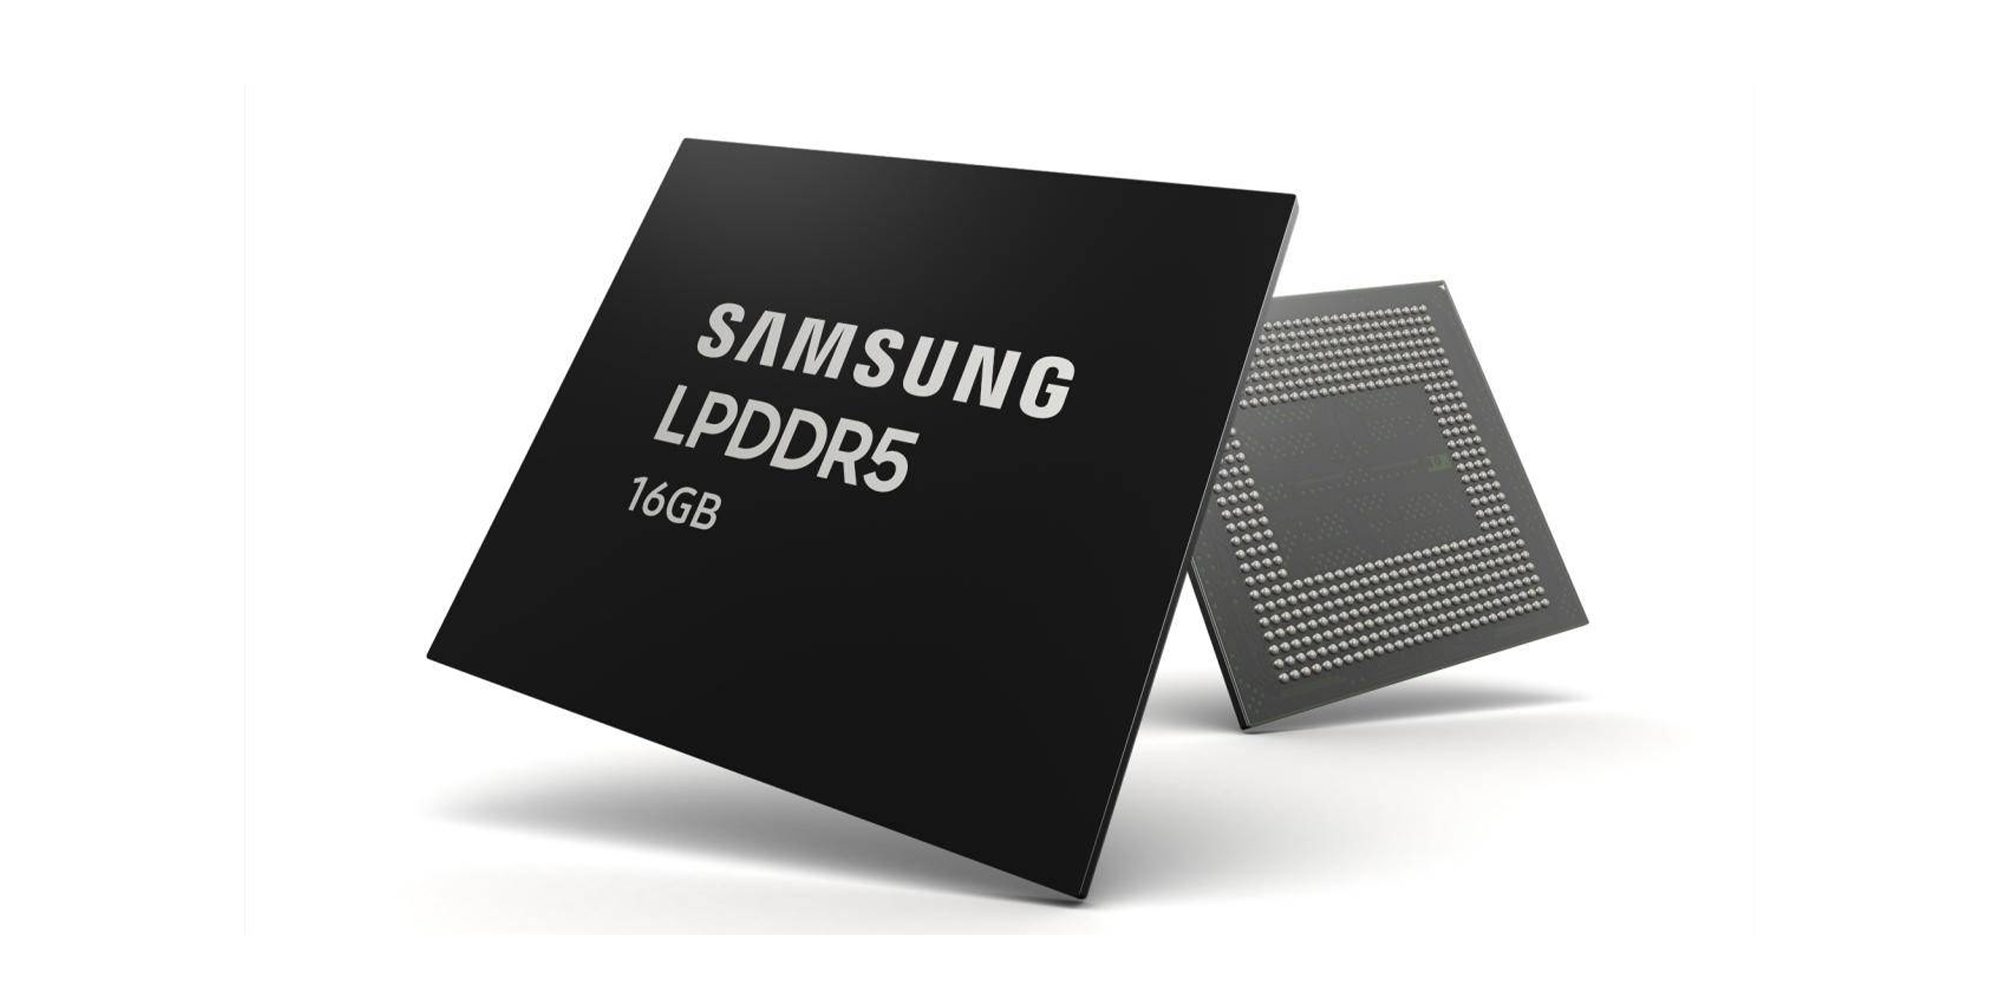 Chip memori LPDDR5 Samsung 16GB ditujukan untuk smartphones masukkan produksi massal